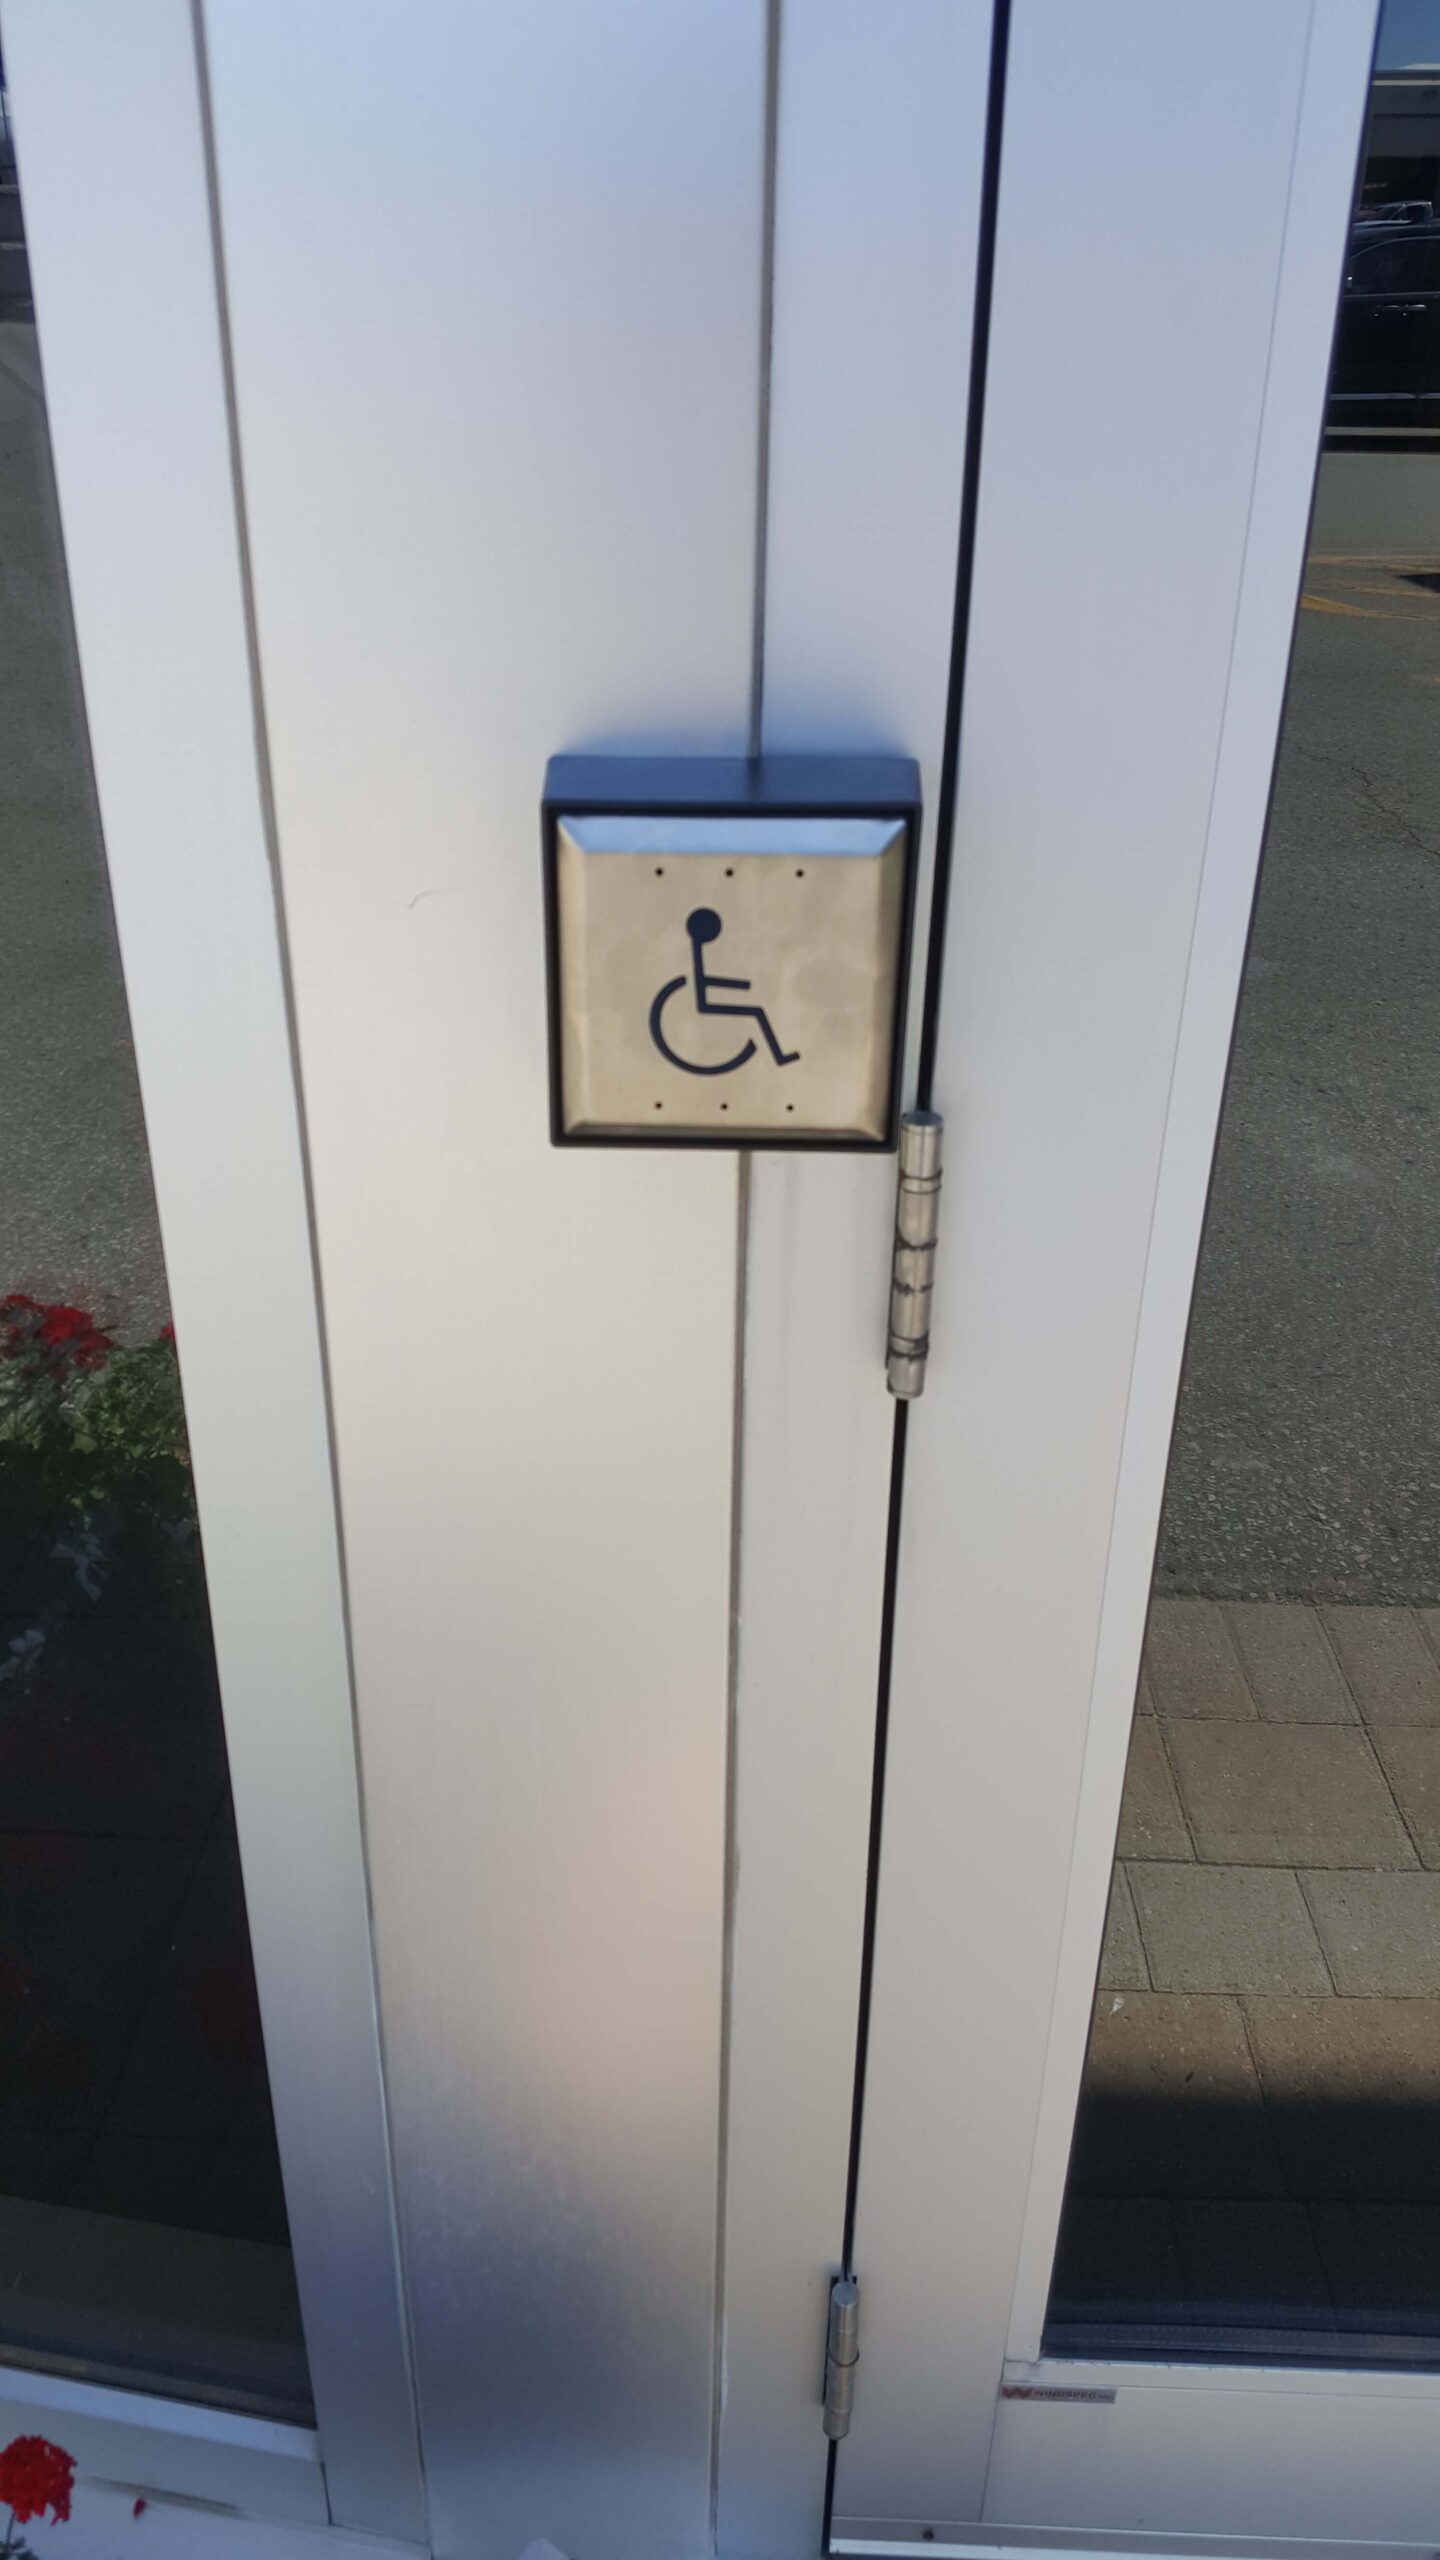 Handicap push button door opener